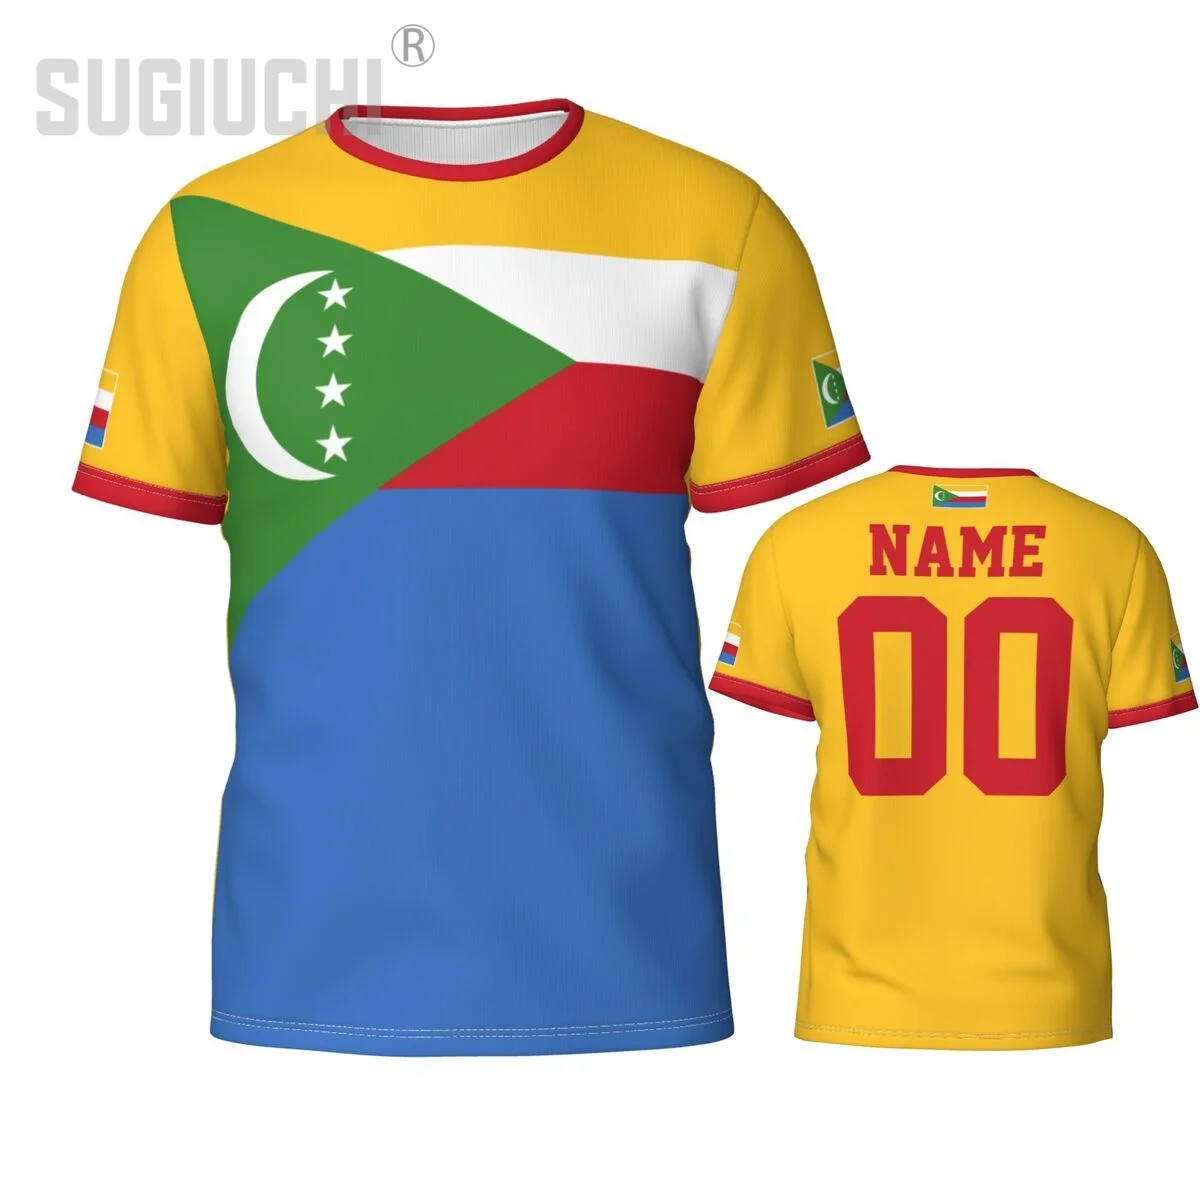 

Футболка Мужская/женская с номером и эмблемой, майка 3D с надписью «Comoros», одежда для команды, футбольного болельщика, подарок